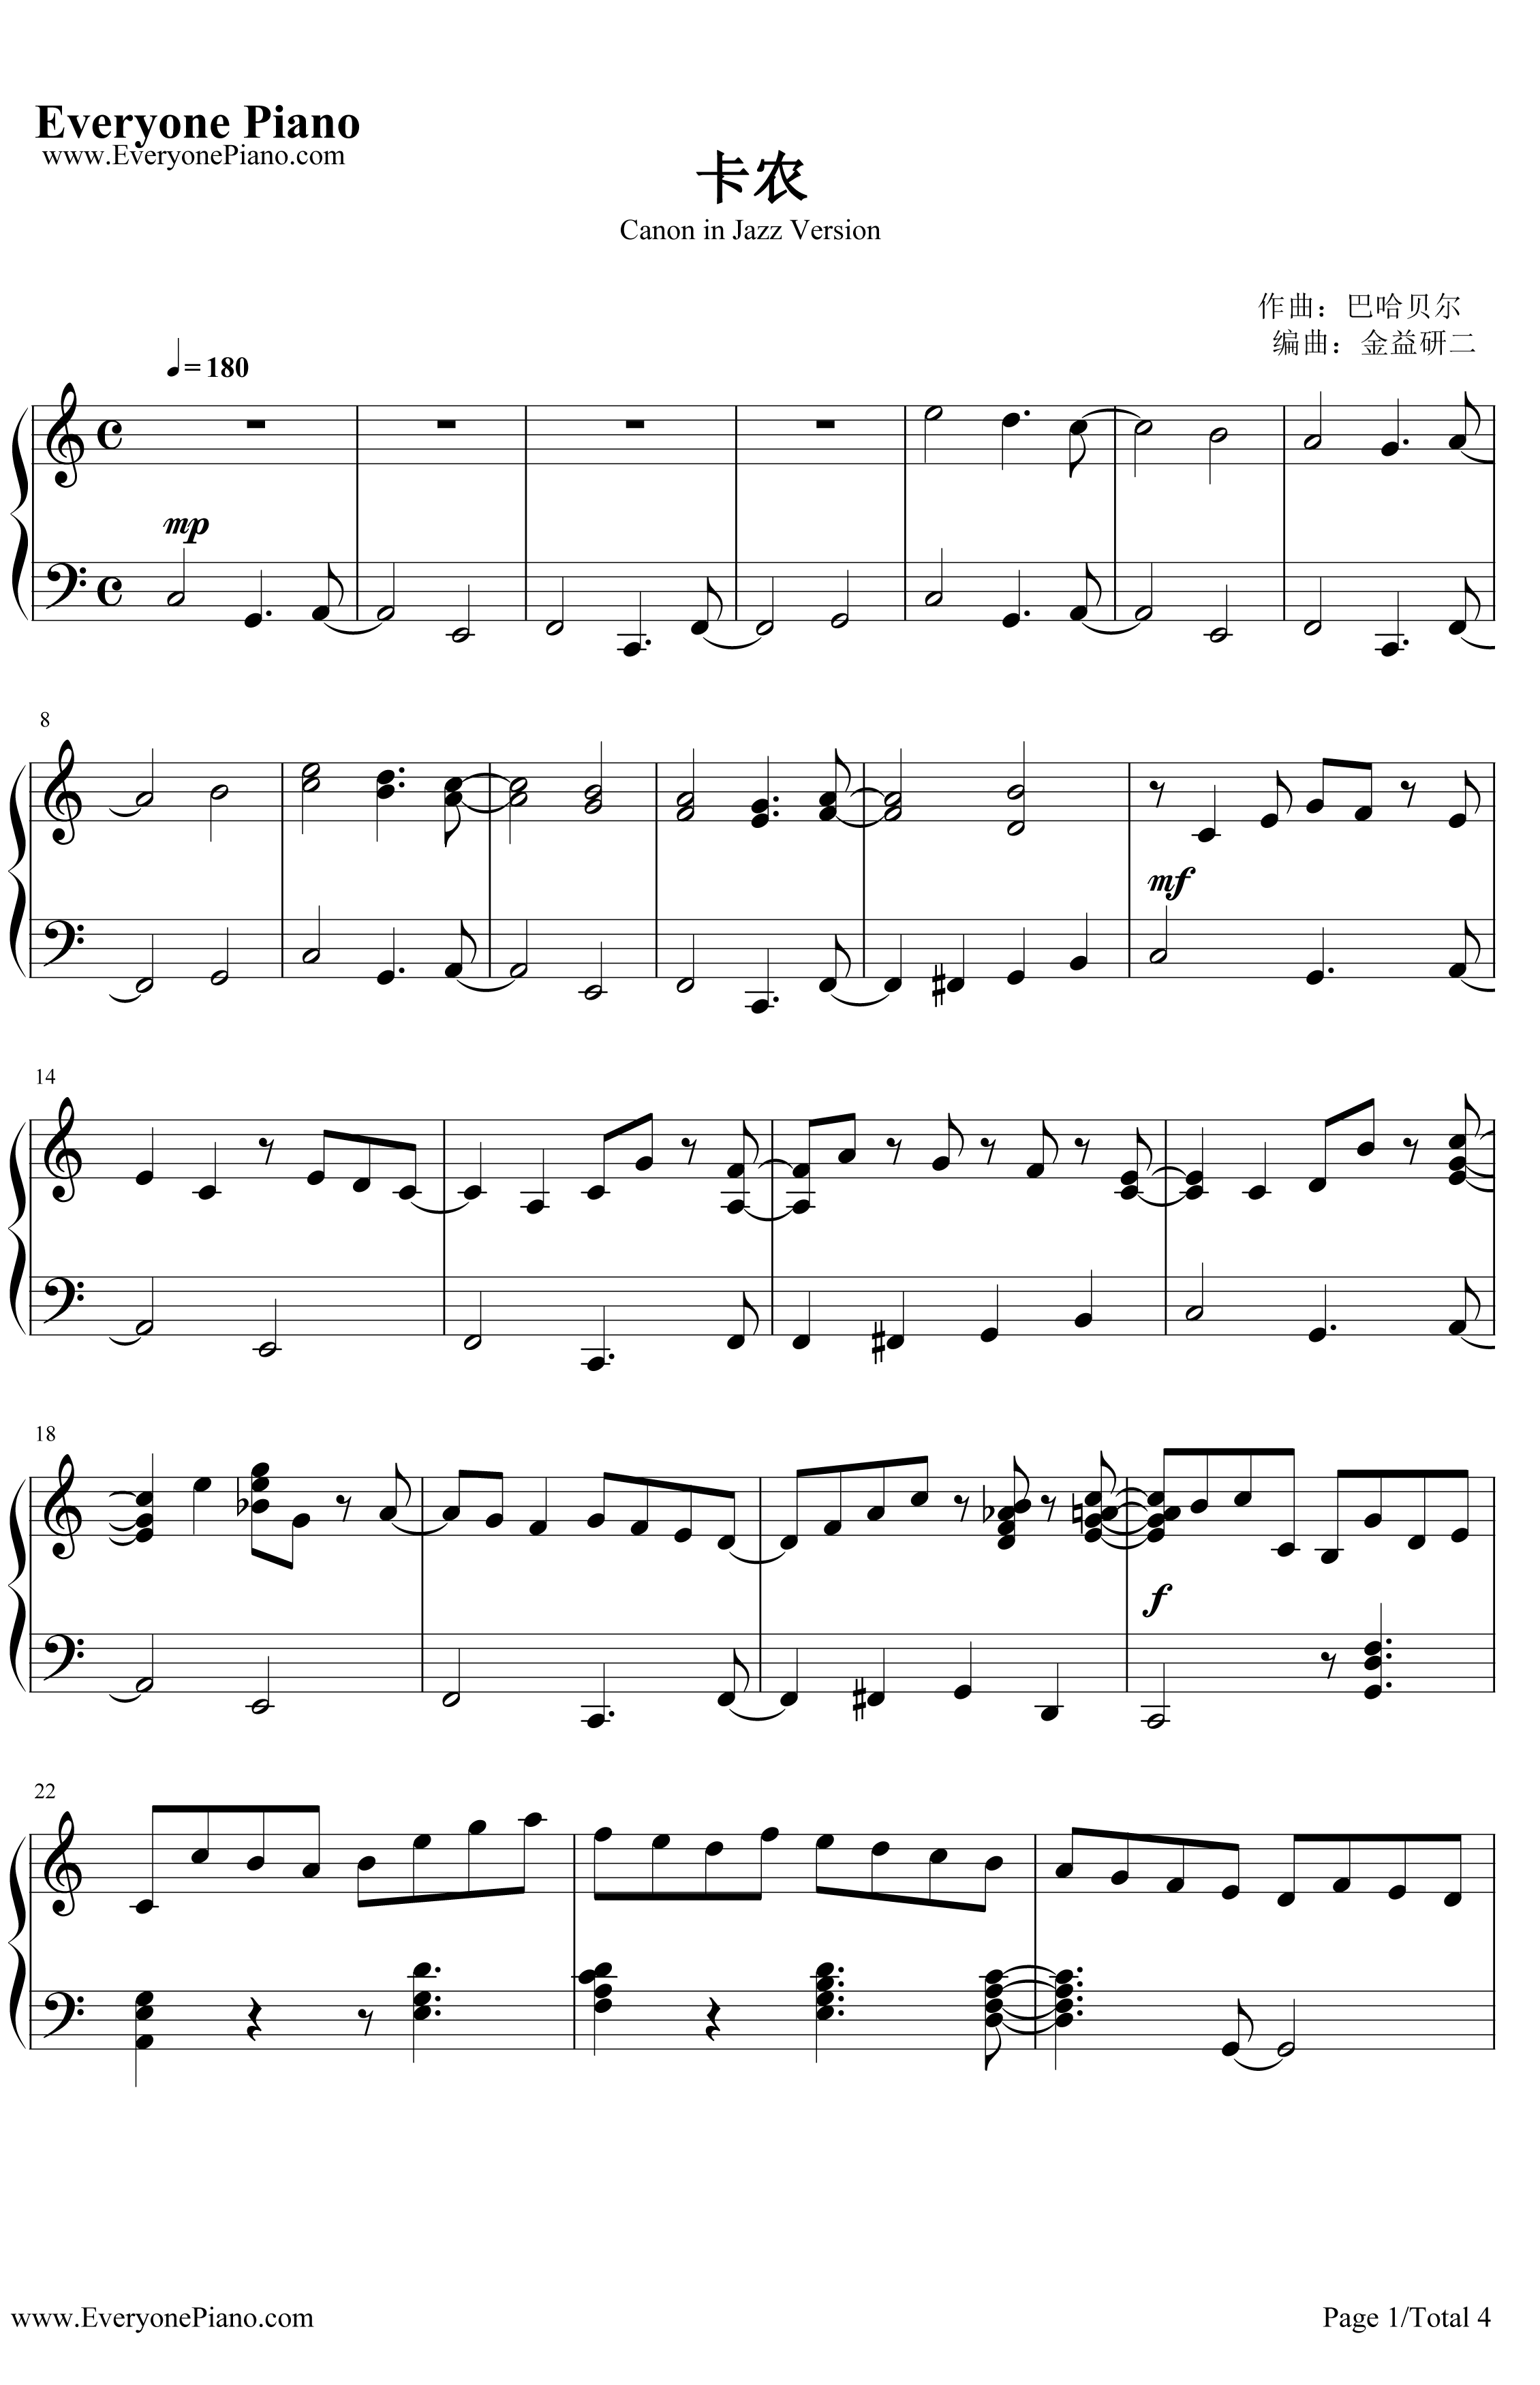 卡农钢琴谱-帕海贝尔-爵士版1